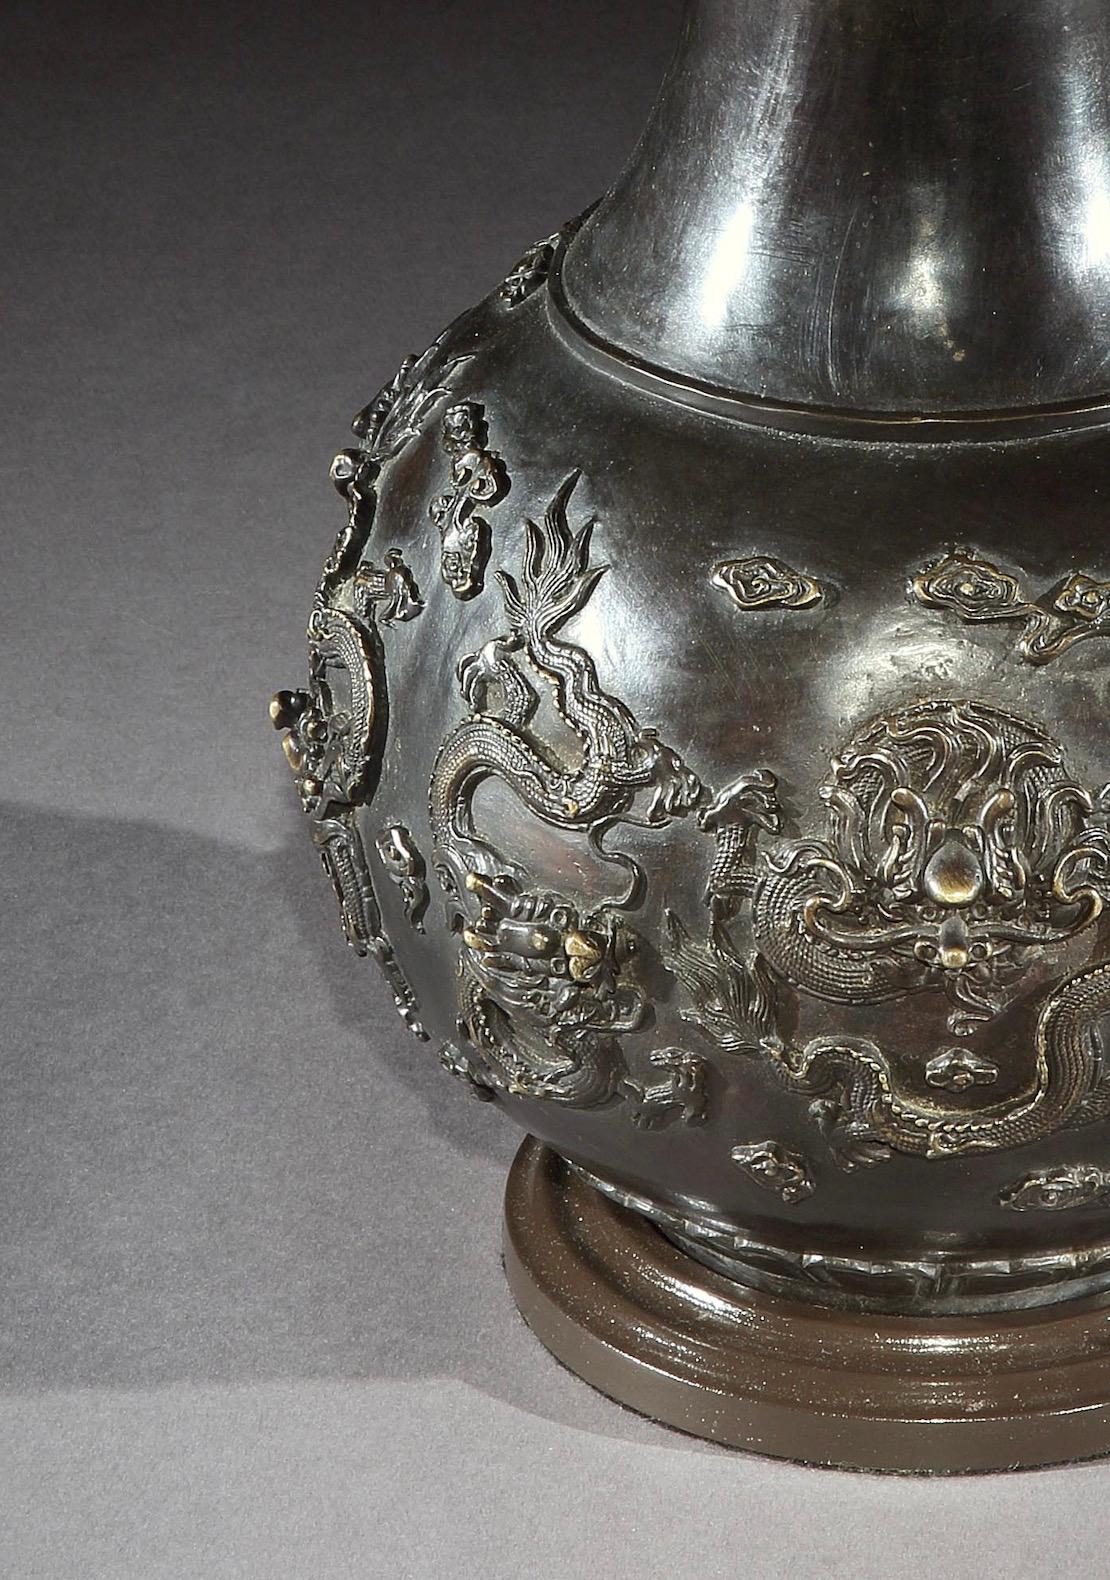 Un vase chinois en bronze présente une décoration appliquée de quatre dragons chassant la perle flamboyante. Maintenant monté comme une lampe.

Hauteur du vase : 16½ po (42 cm) incluant la base, excluant les installations électriques et les